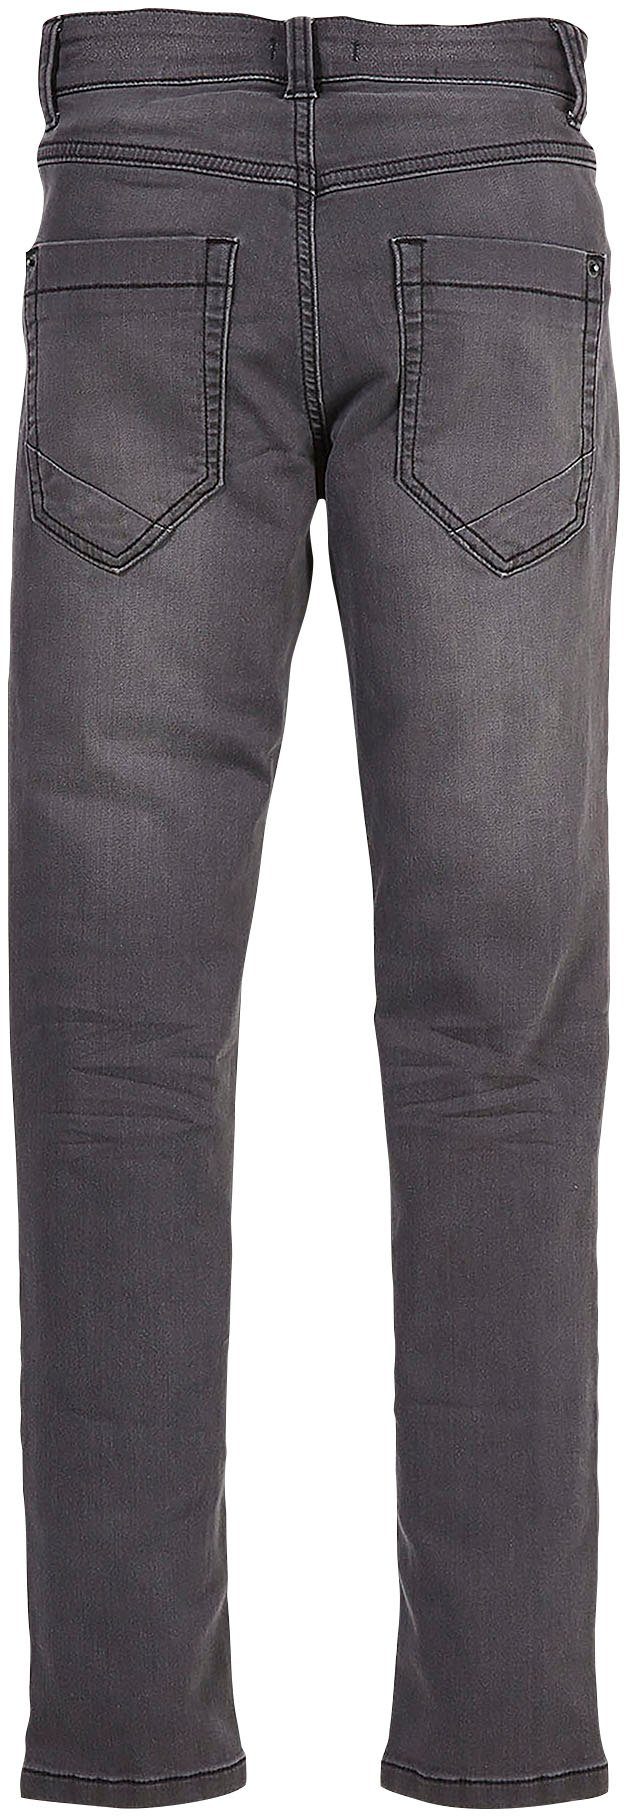 s.Oliver Skinny-fit-Jeans Junior